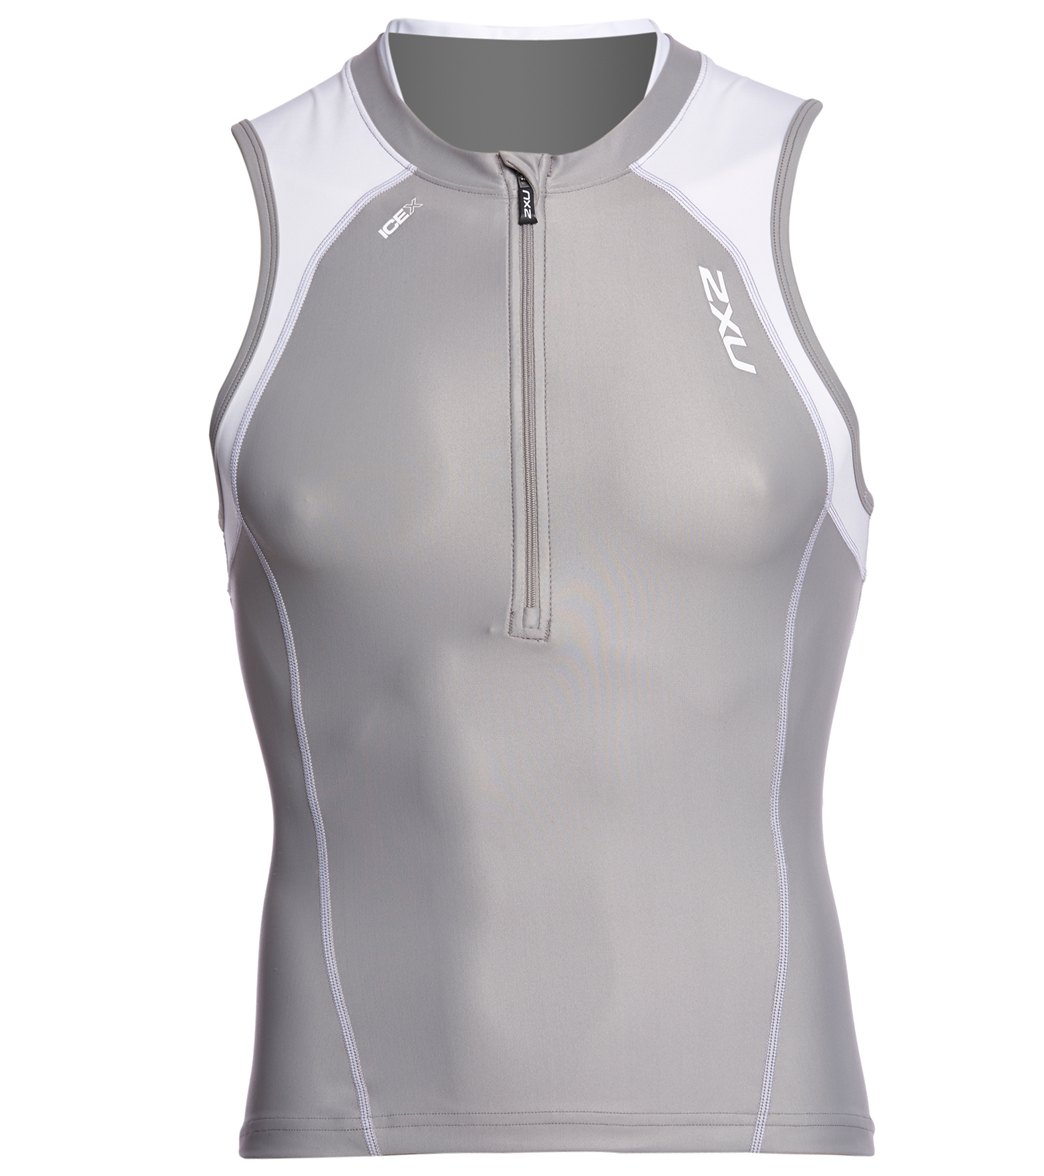 2Xu Men's Compression Tri Singlet - Frost Grey/White Small Vest Nylon/Elastane - Swimoutlet.com